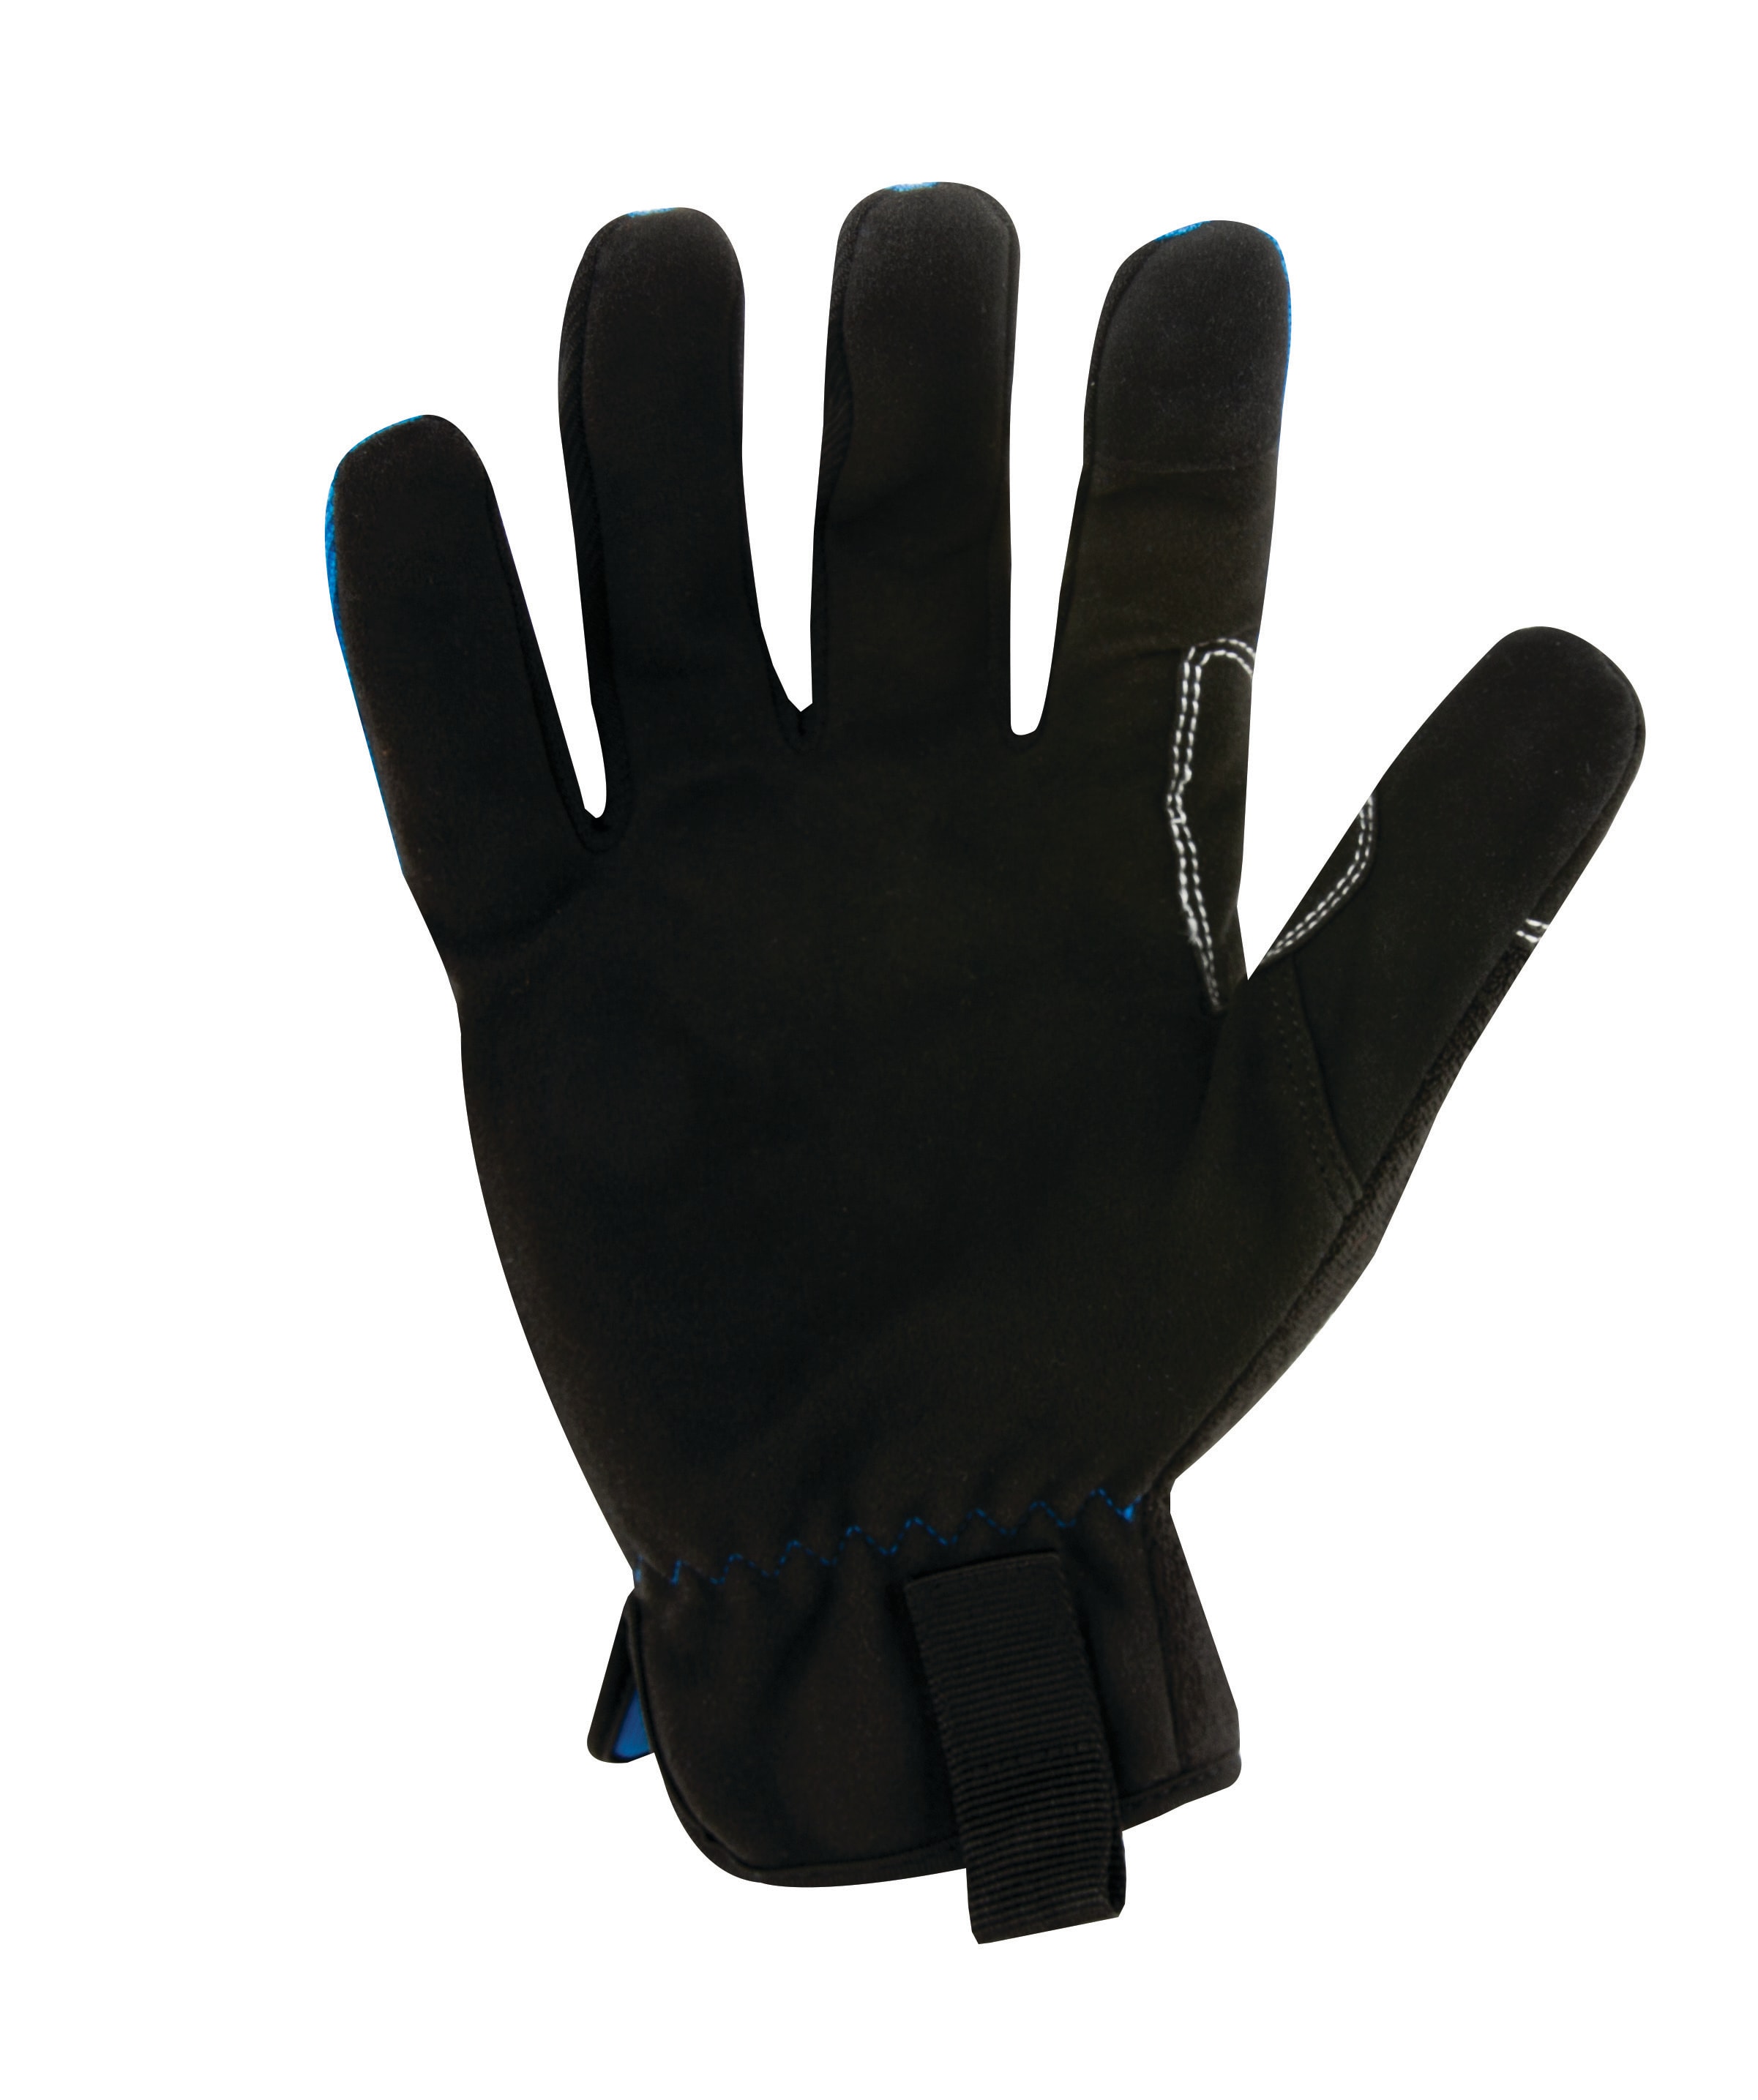 Kobalt Multipurpose Gloves for Men - Nitrine - XLarge - Black B51180KTC10